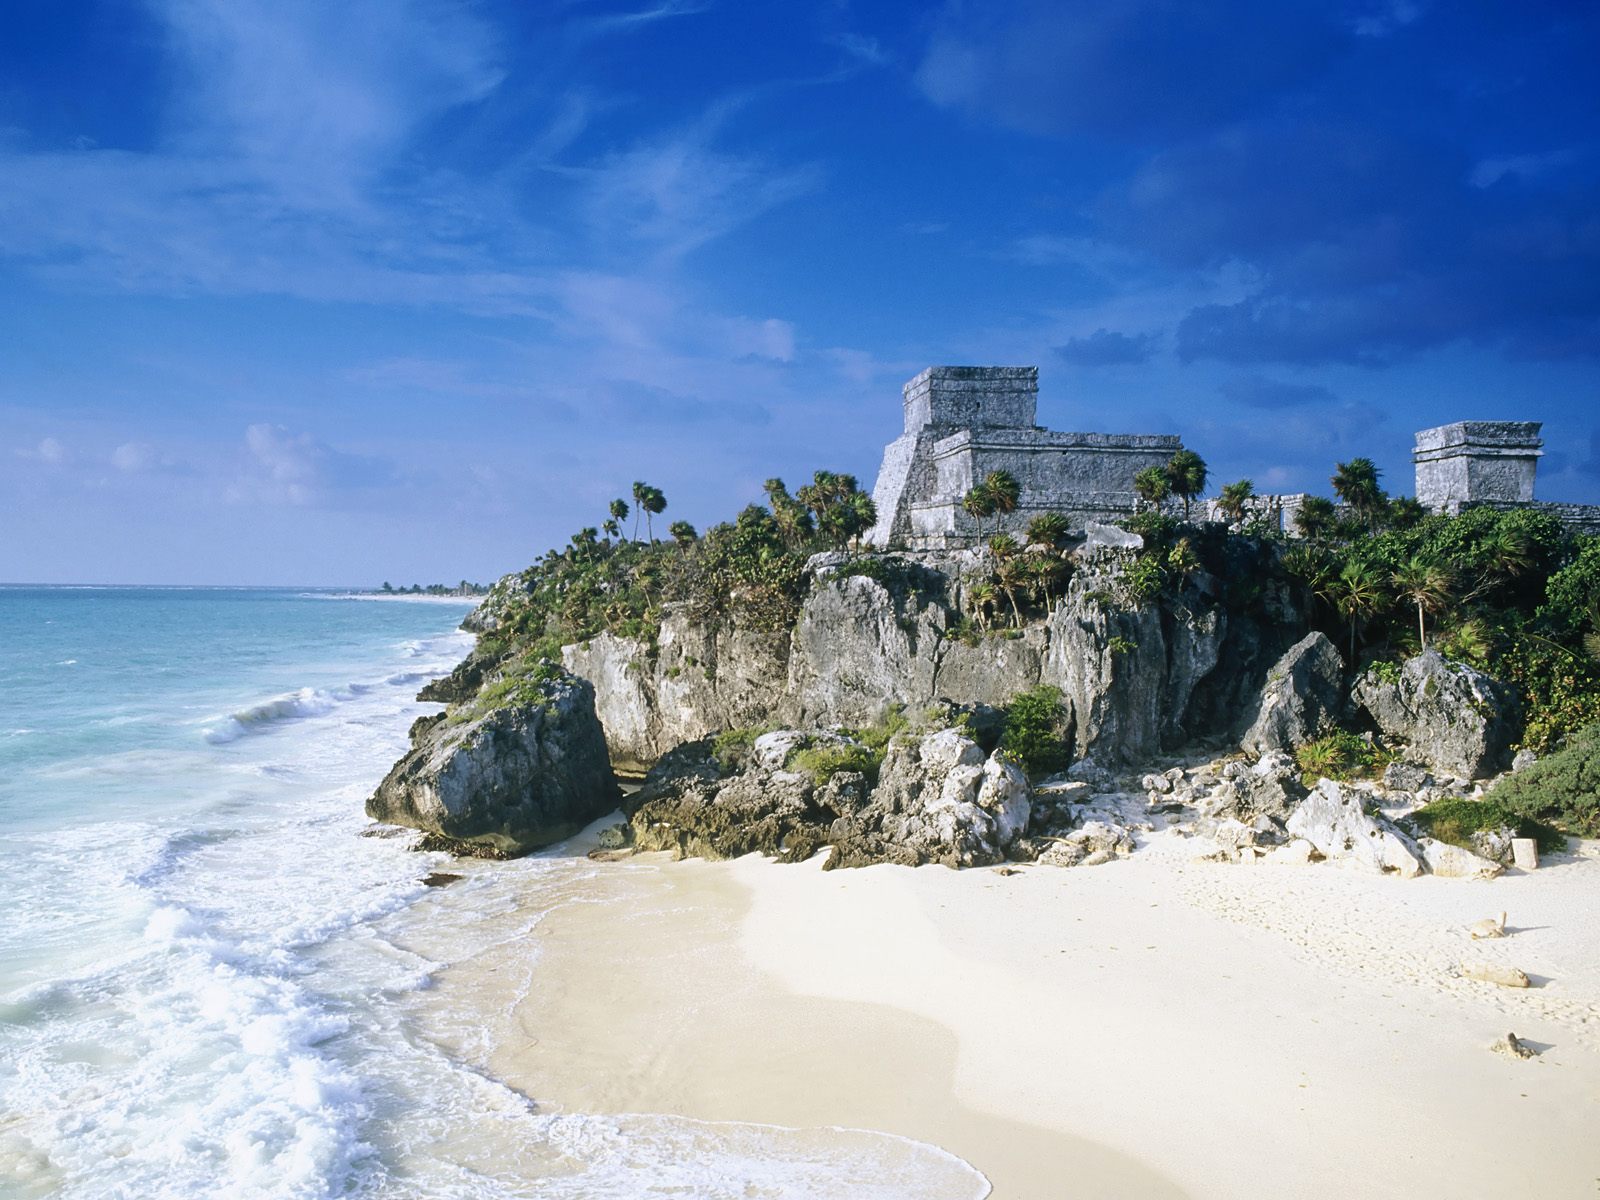 Phoebettmh Travel: (Mexico) - Sun, sand and the Caribbean sea on the